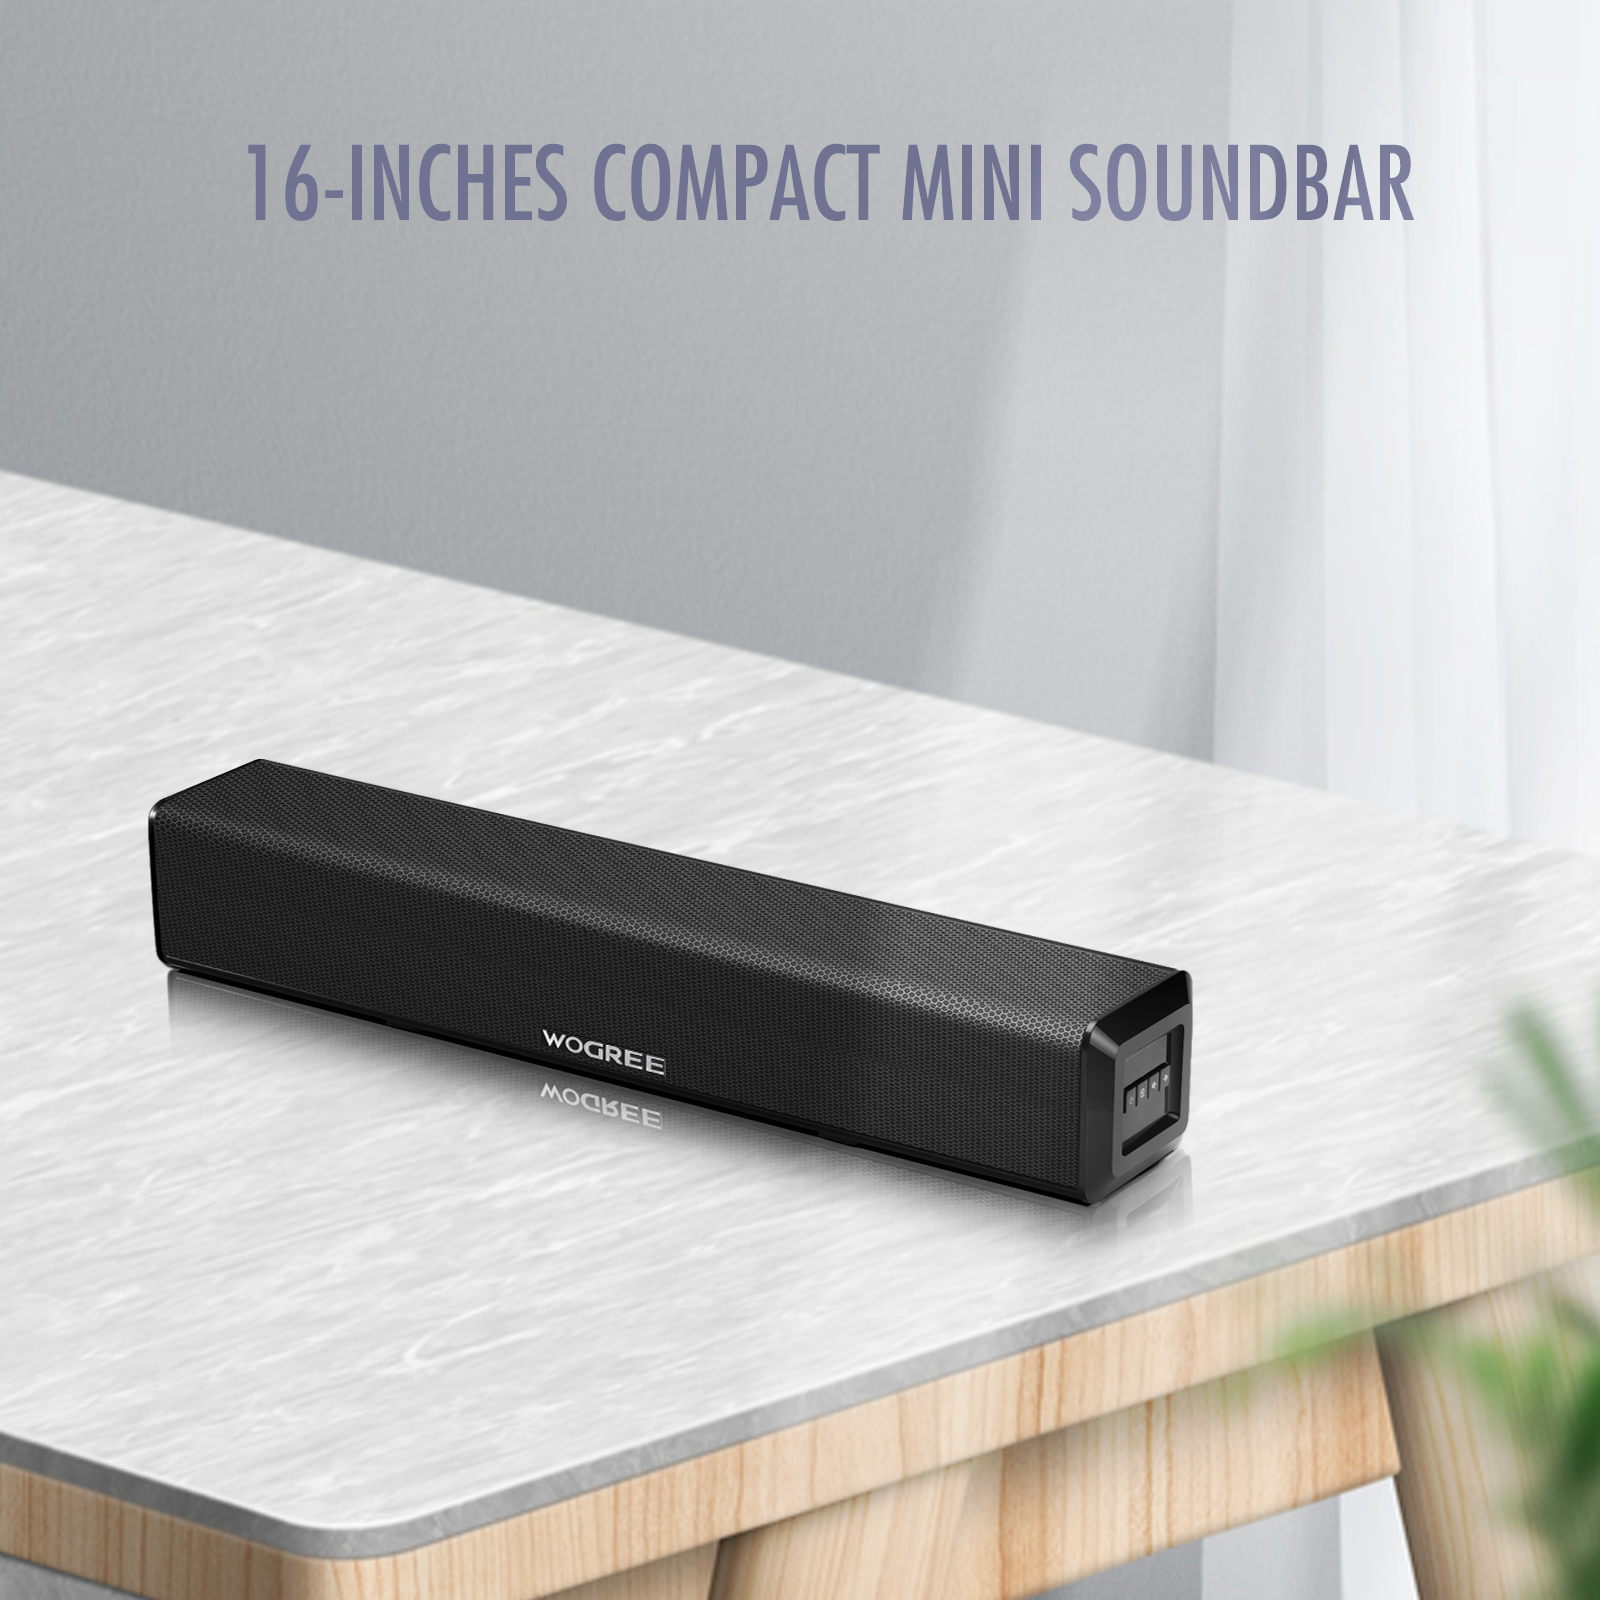 Wogree Mini Soundbar 16-Inch 50W with Bluetooth, Optical, AUX, USB Con